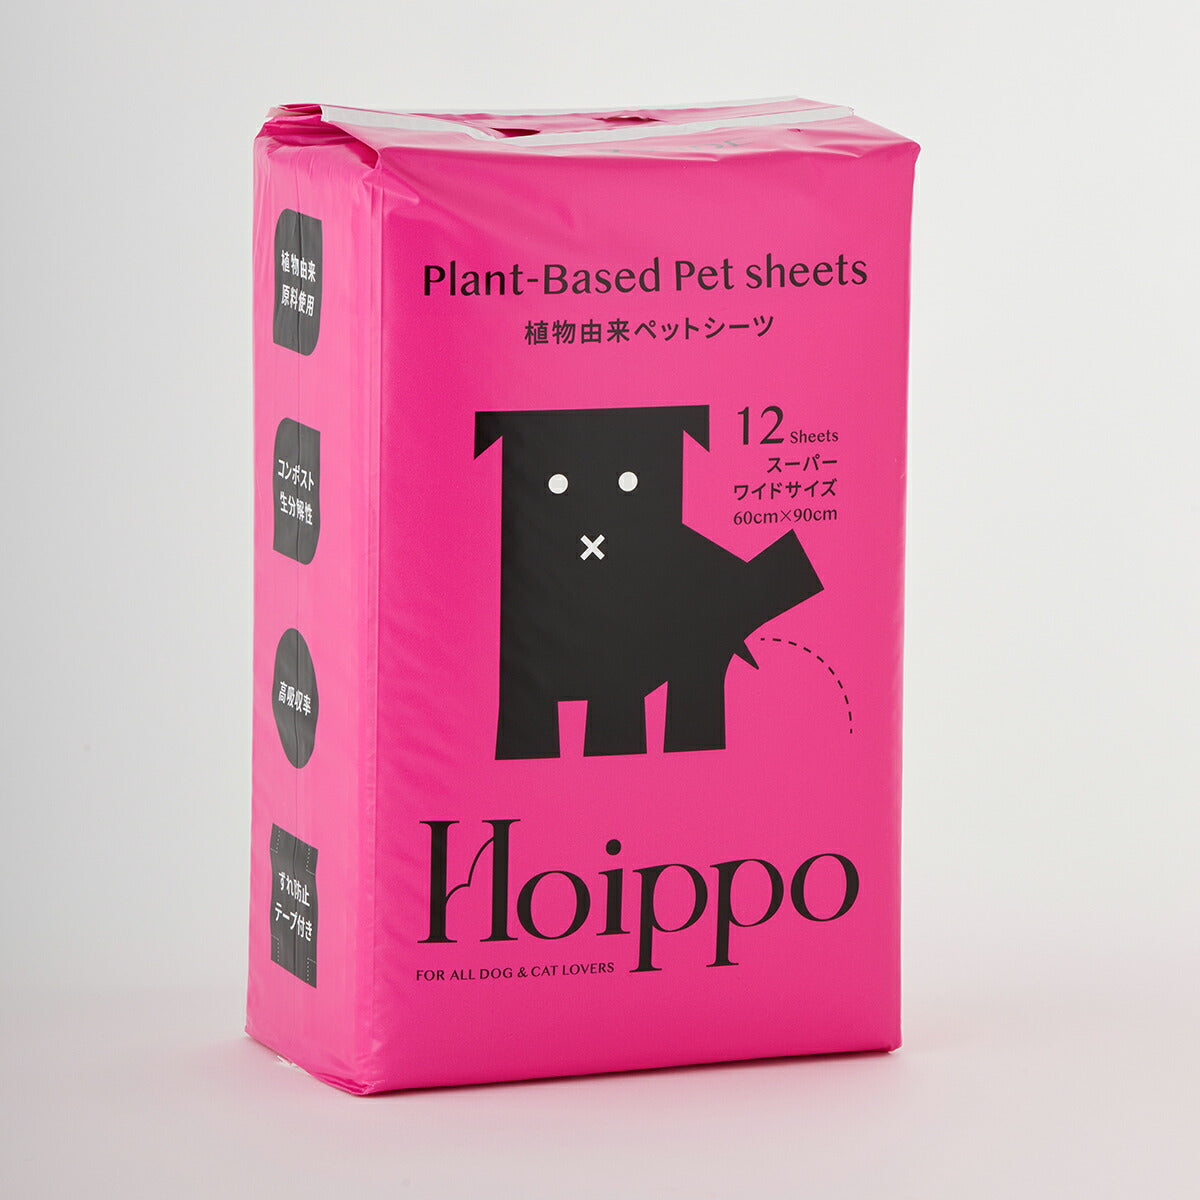 Hoippo（ホイッポ） 植物由来ペットシーツ スーパーワイド 12枚入